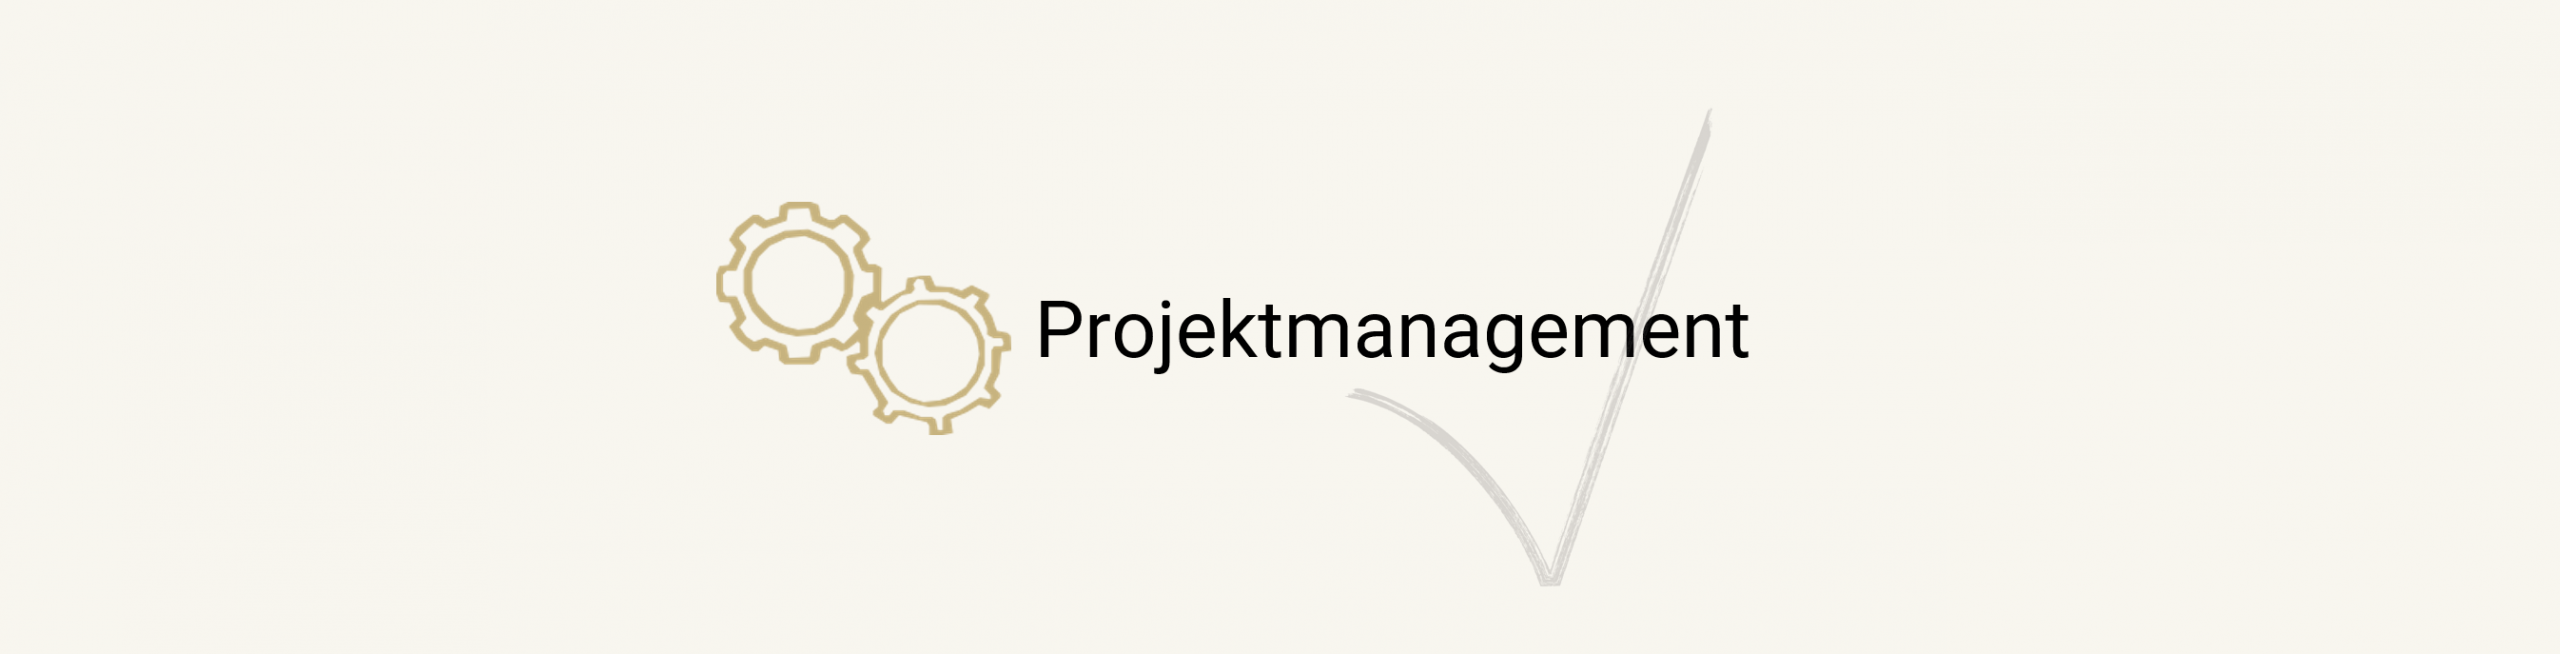 Projektmanagement_Leistung